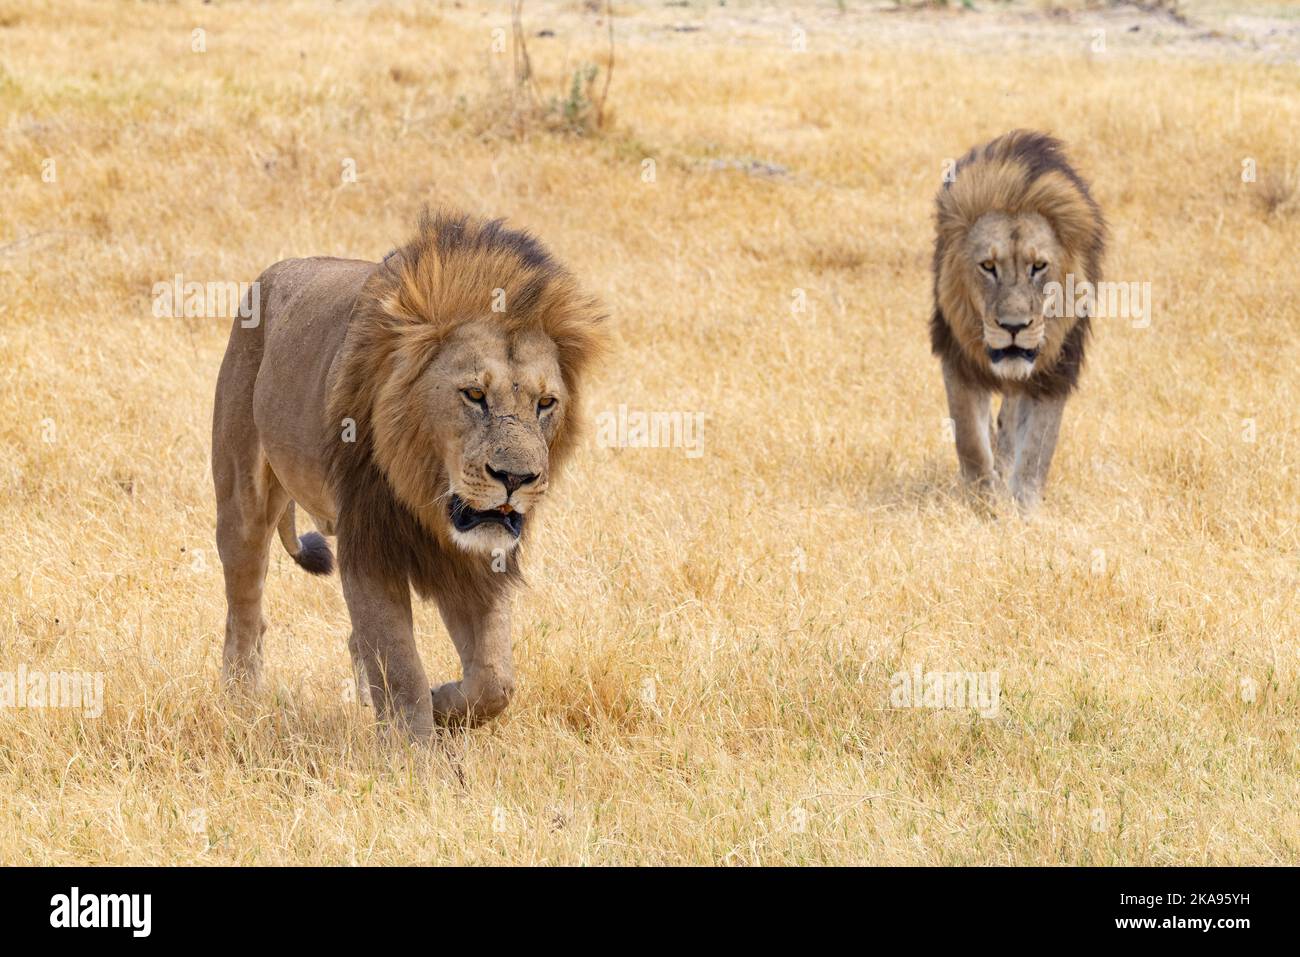 Lions Africa; zwei prächtige Erwachsene männliche Lions, Panthera leo, die im Gras spazieren; Moremi Game Reserve, Okavango Delta Botswana Africa. Afrikanische Tiere. Stockfoto